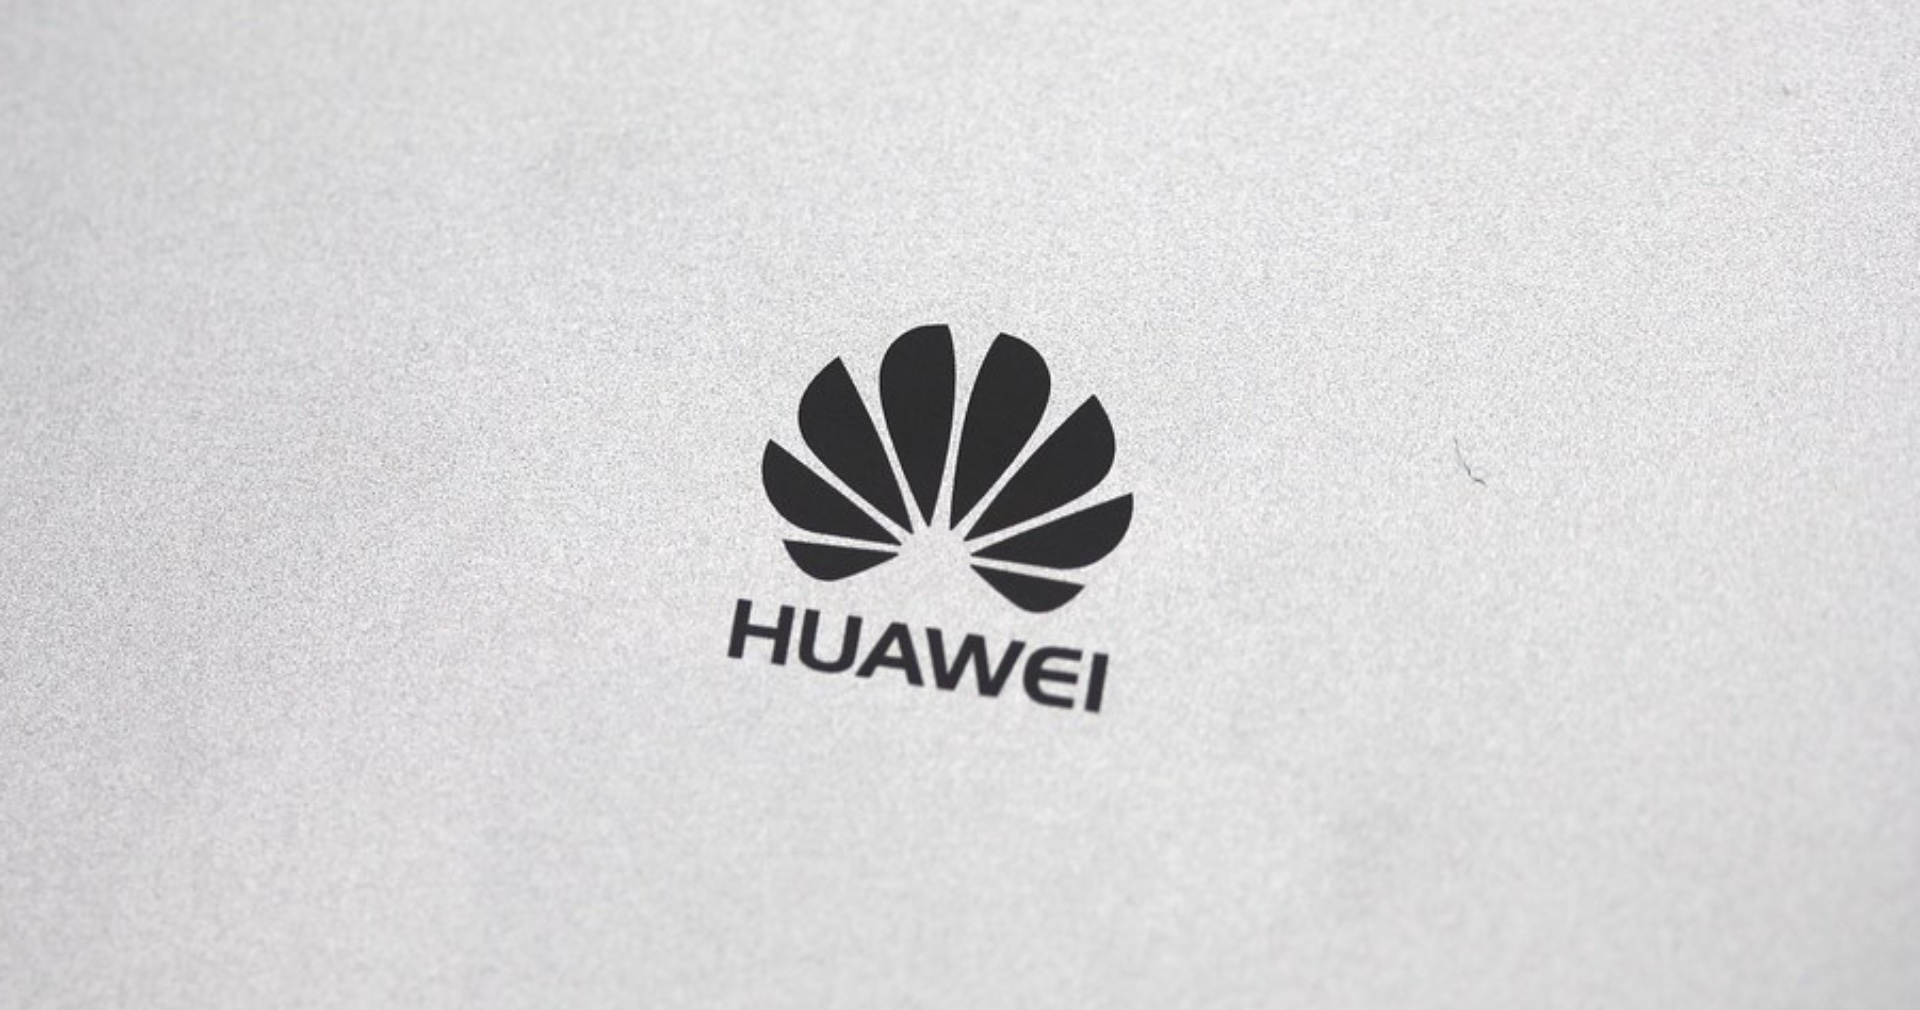 Huawei เน้นพัฒนาซอฟต์แวร์มากขึ้น หลังโดนสหรัฐฯ ขัดขา อาจเป็นได้เหมือน Google